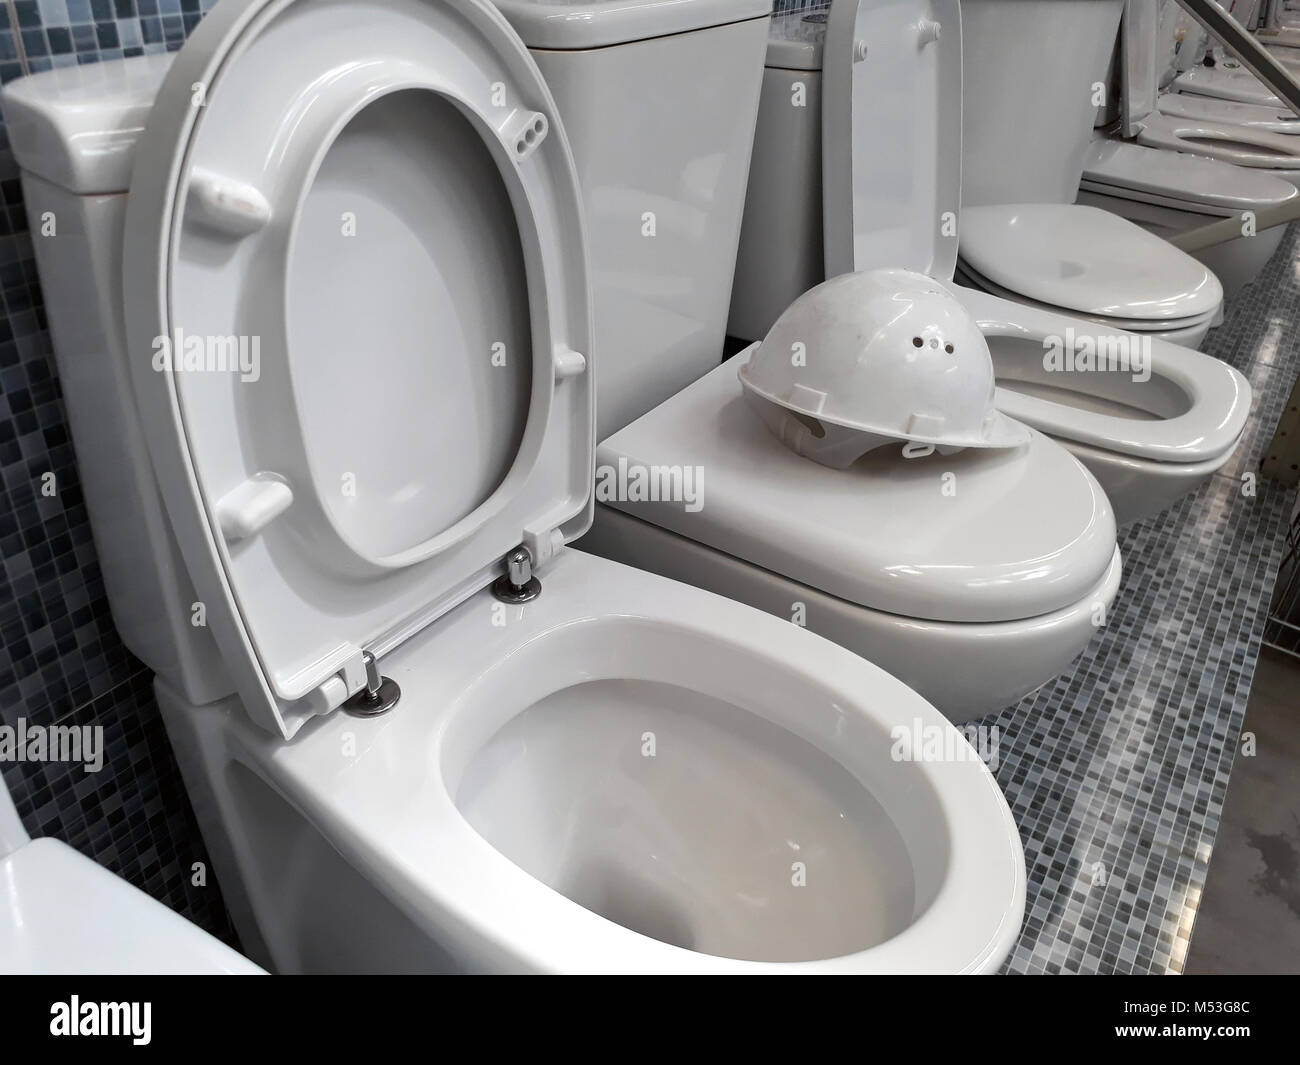 Tazze da toilette immagini e fotografie stock ad alta risoluzione - Alamy